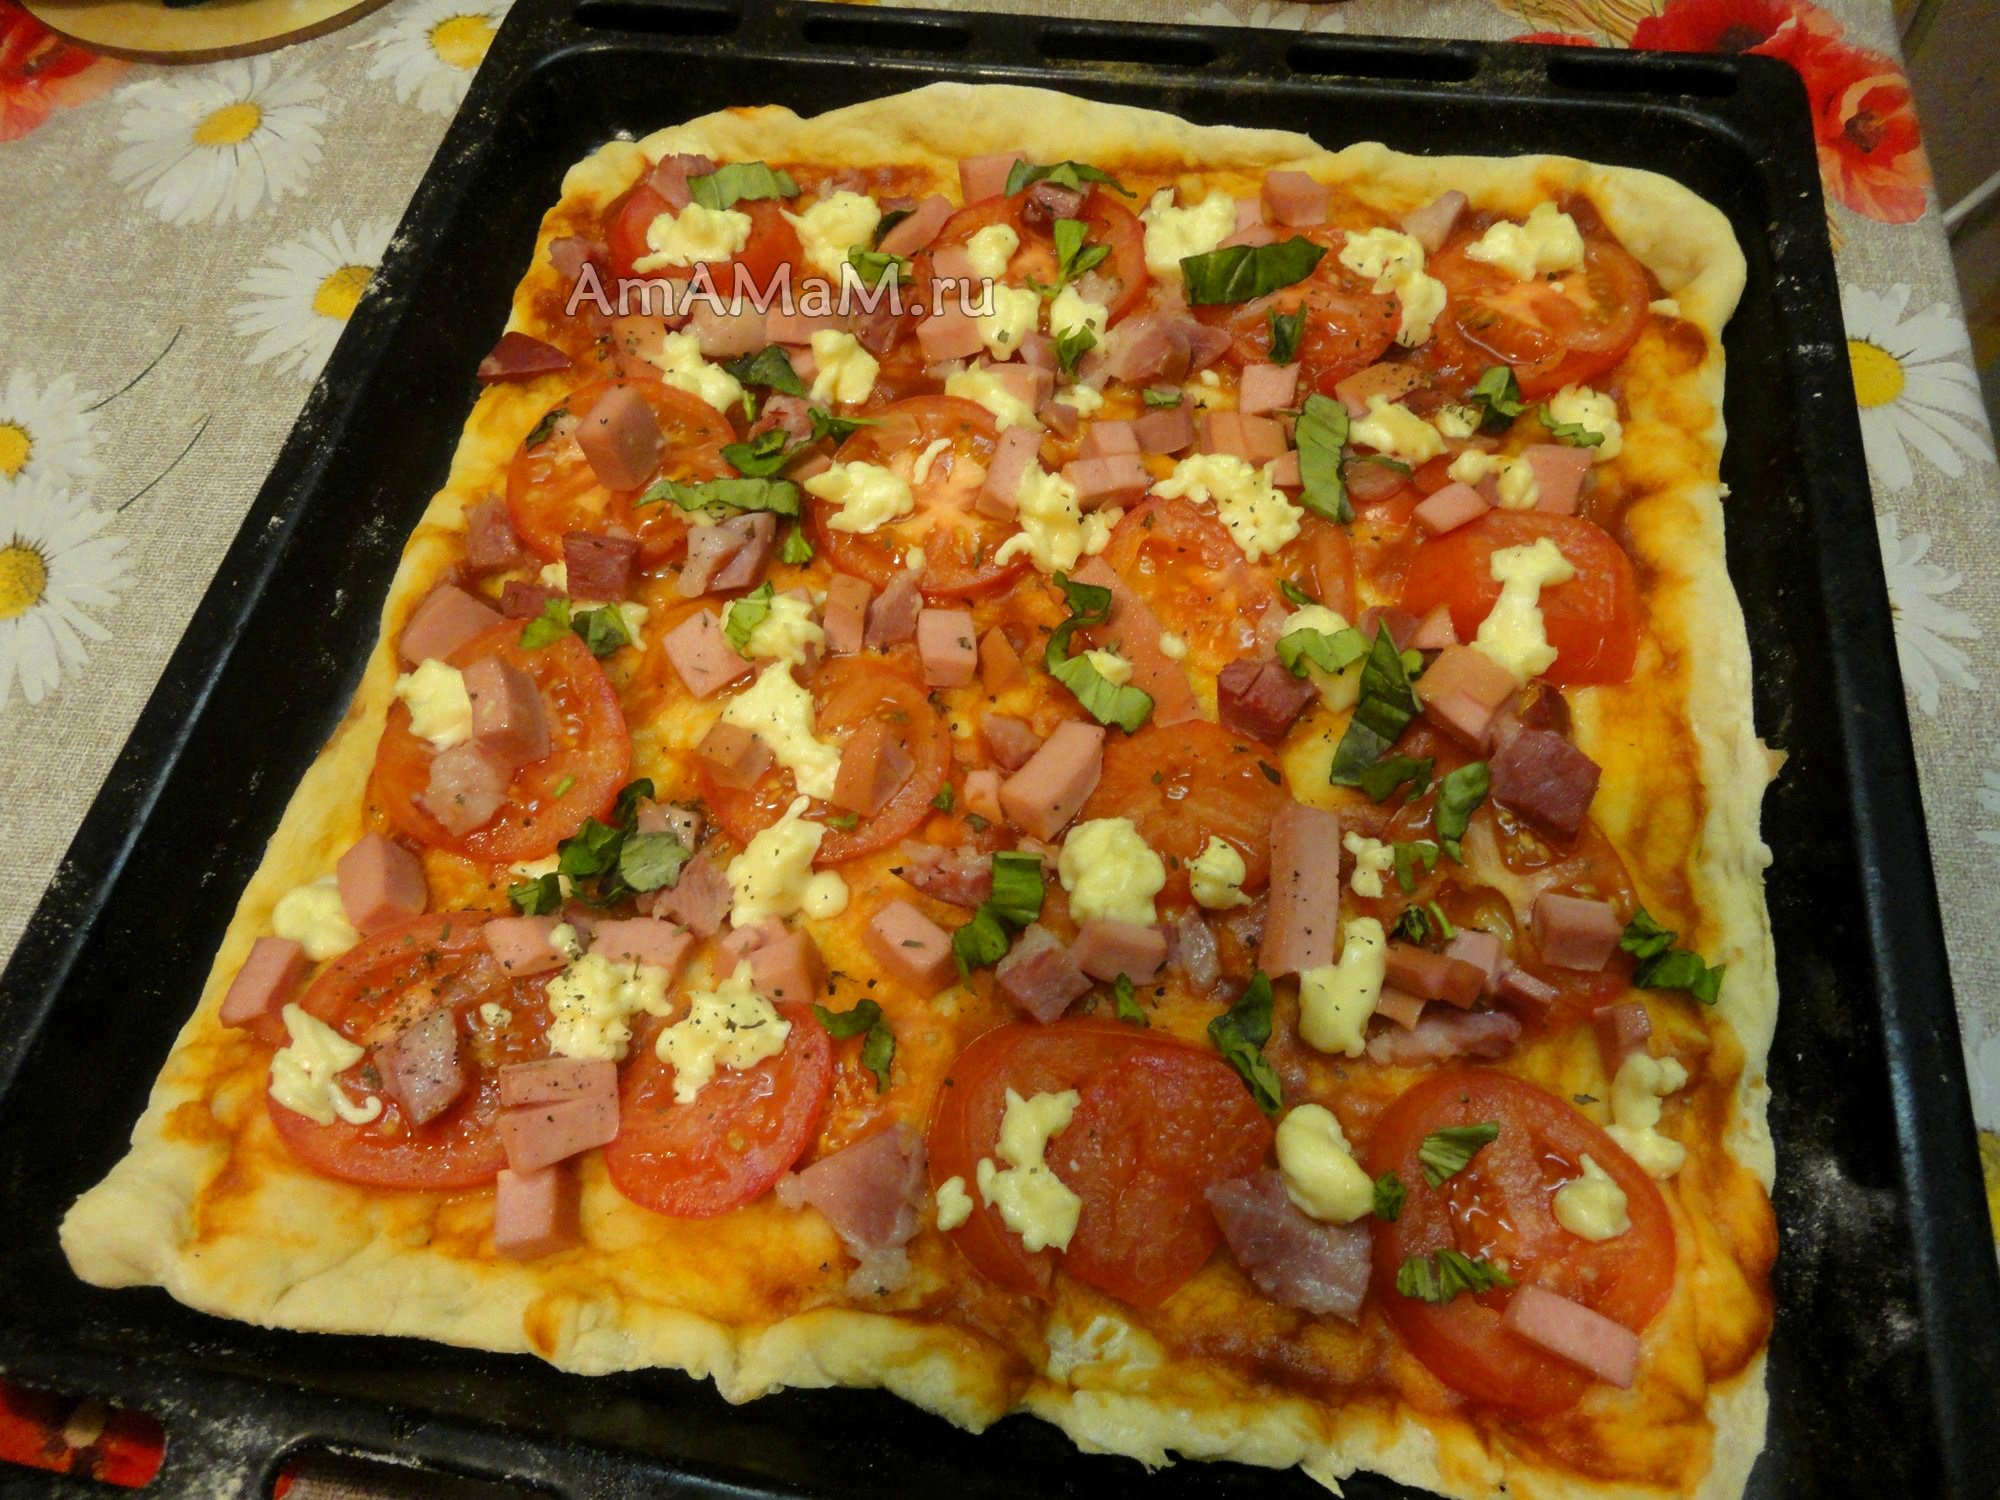 пицца домашняя в духовке рецепт приготовления пошагово фото 110